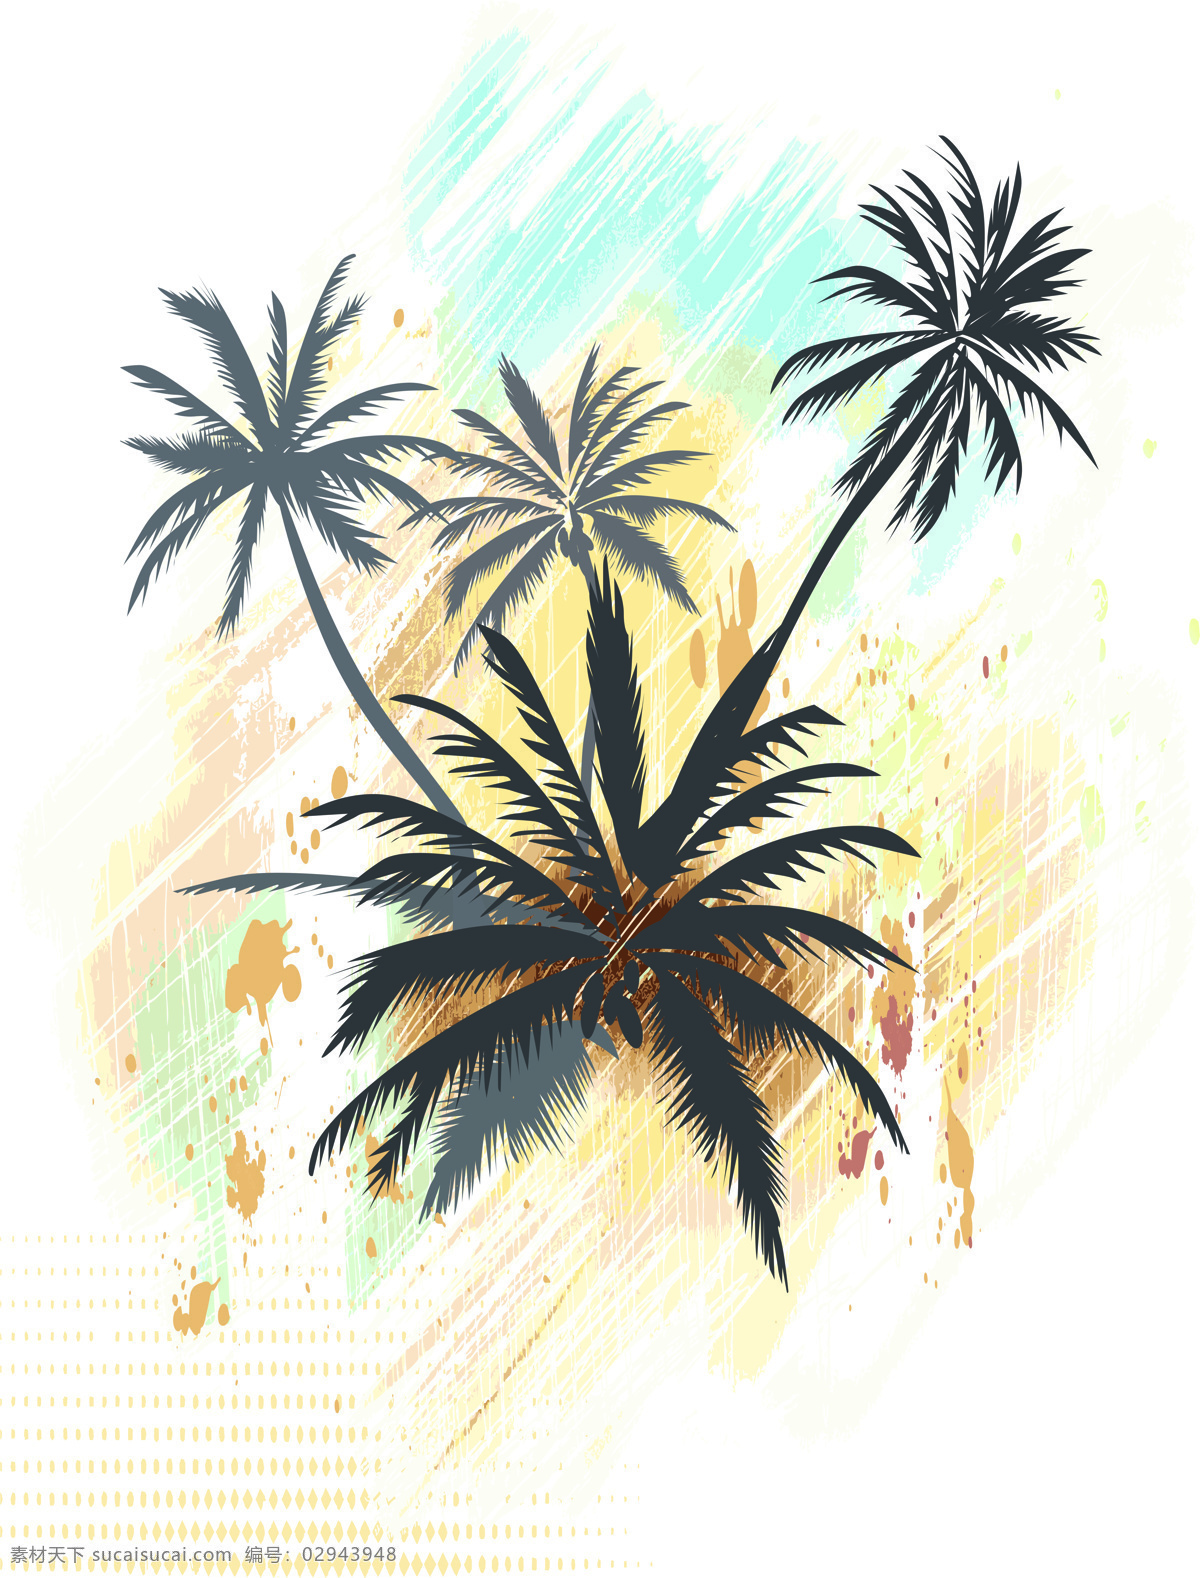 海南 树木 抽象 底纹边框 椰子树 移门 移门图案 南树木 海南风光 装饰素材